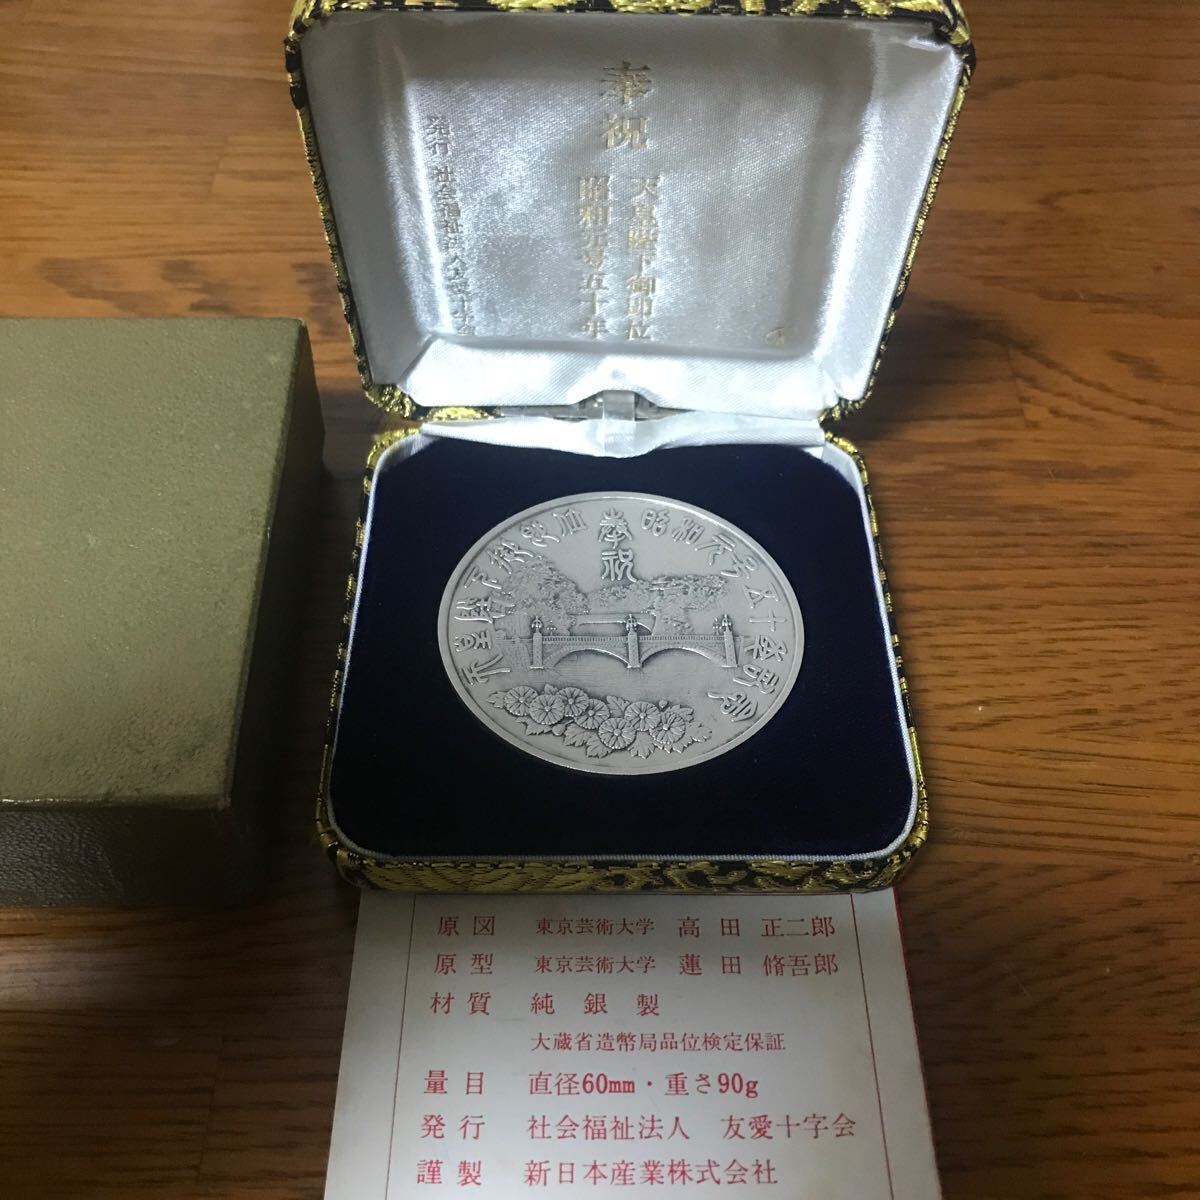 天皇陛下御即位 昭和元号五十年奉祝記念メダルの画像1